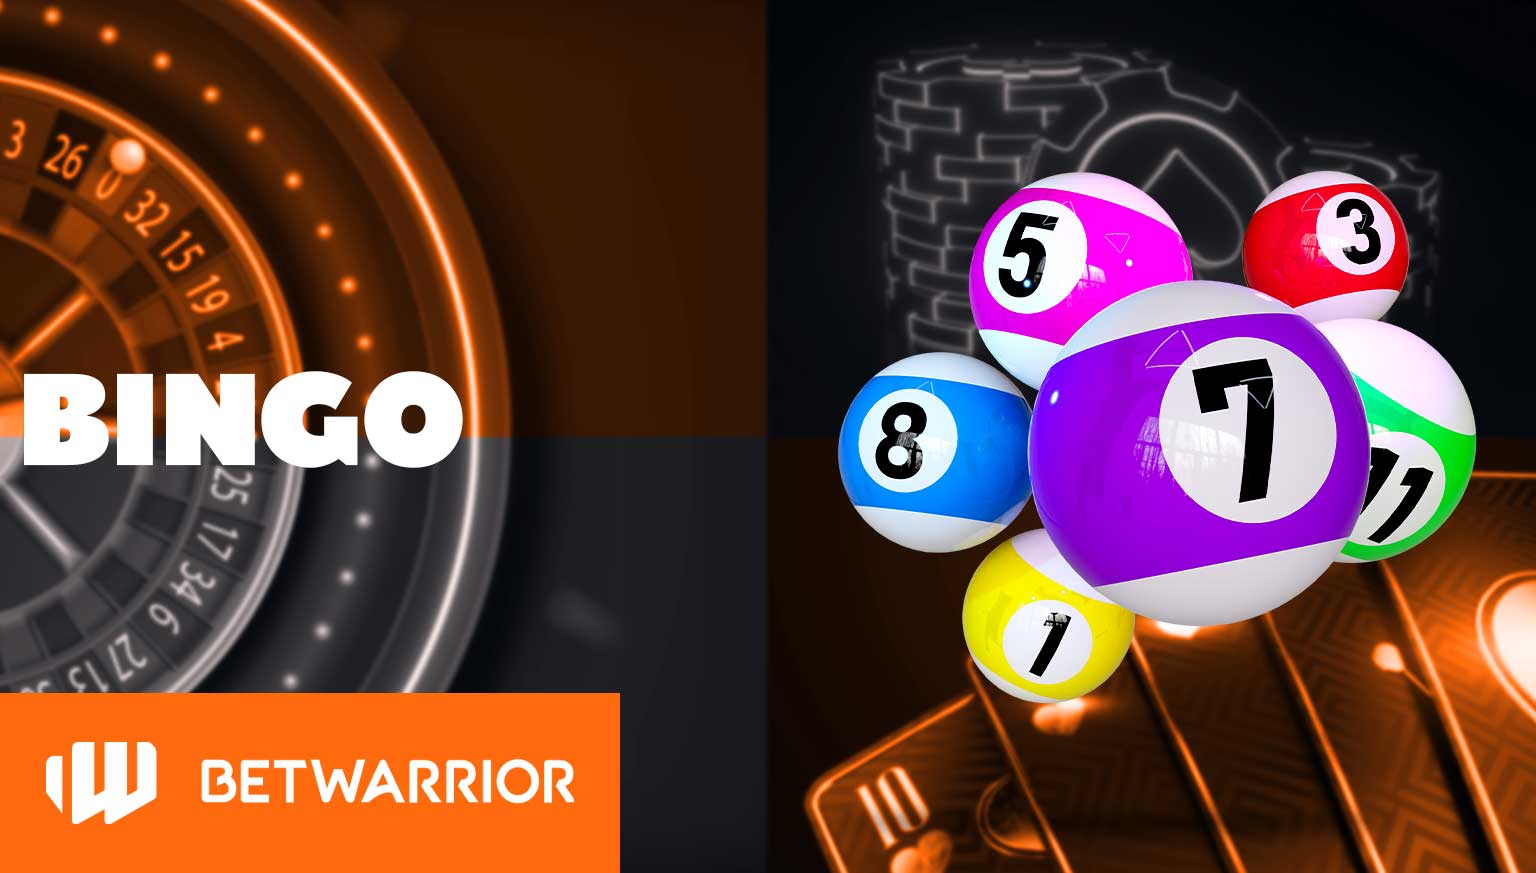 Análise detalhada das "Bingo" na seção de cassino da plataforma BetWarrior.